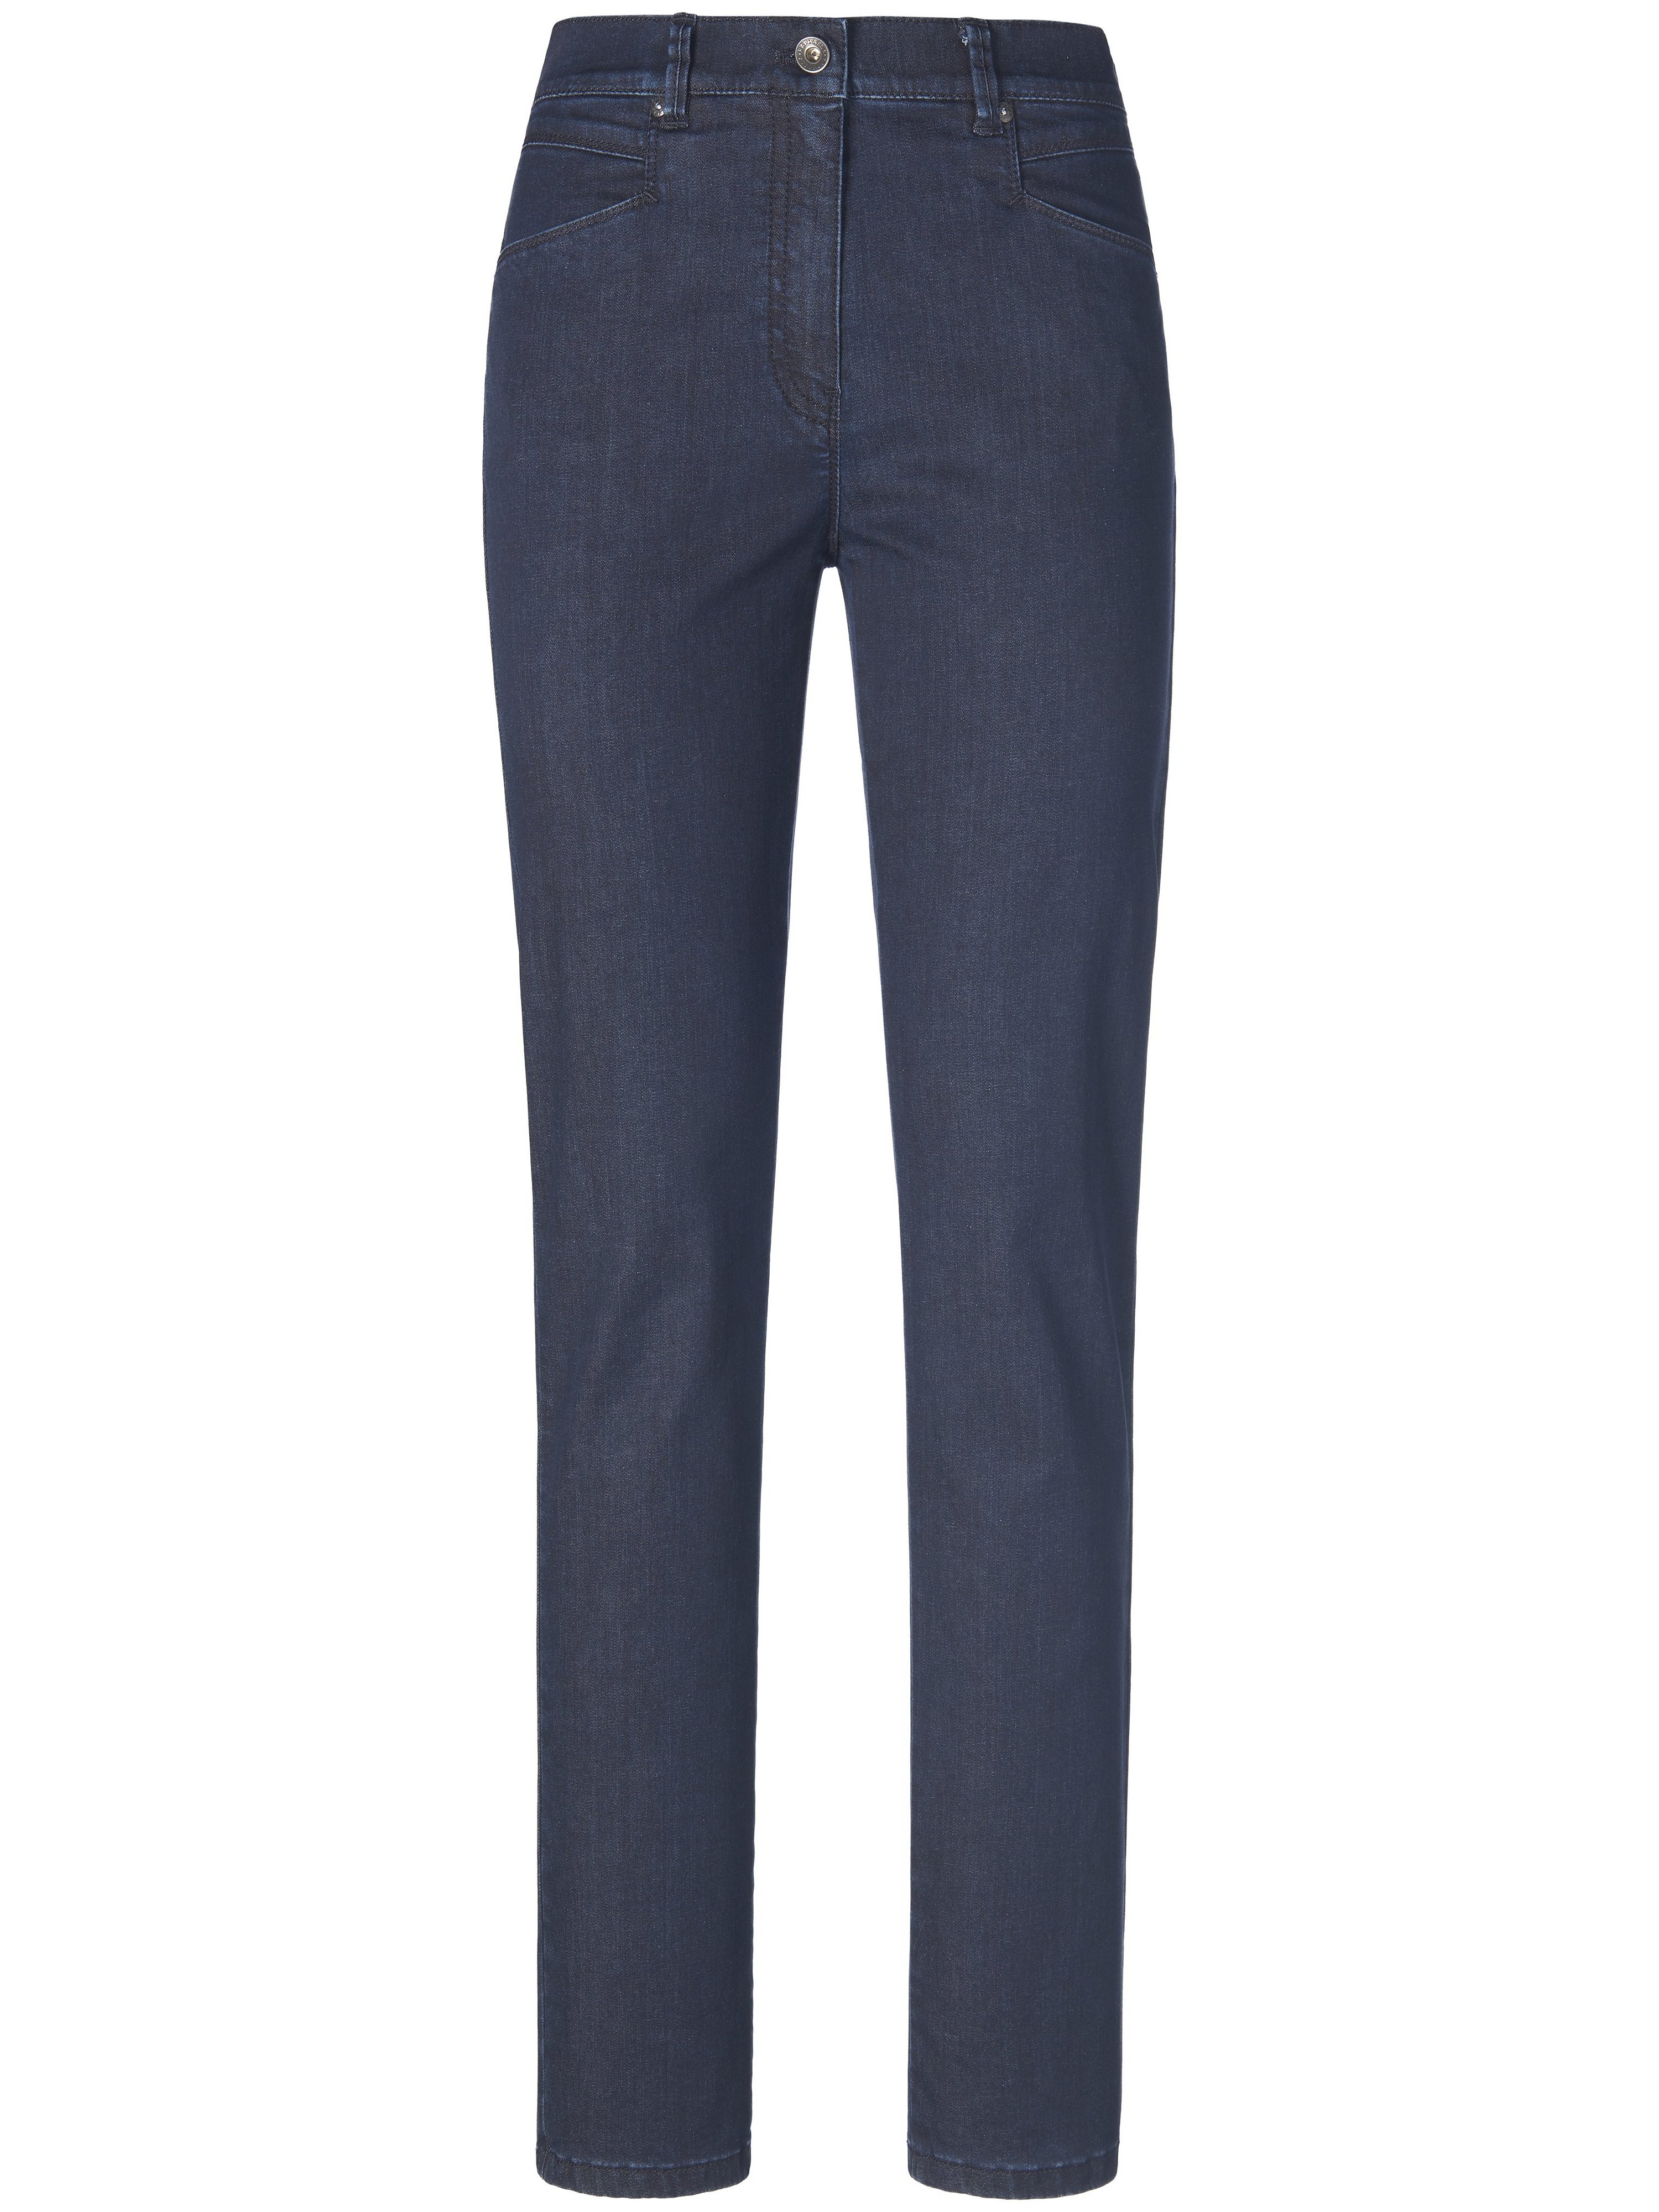 Corrigerende Comfort Plus-jeans model Caren Van Raphaela by Brax denim